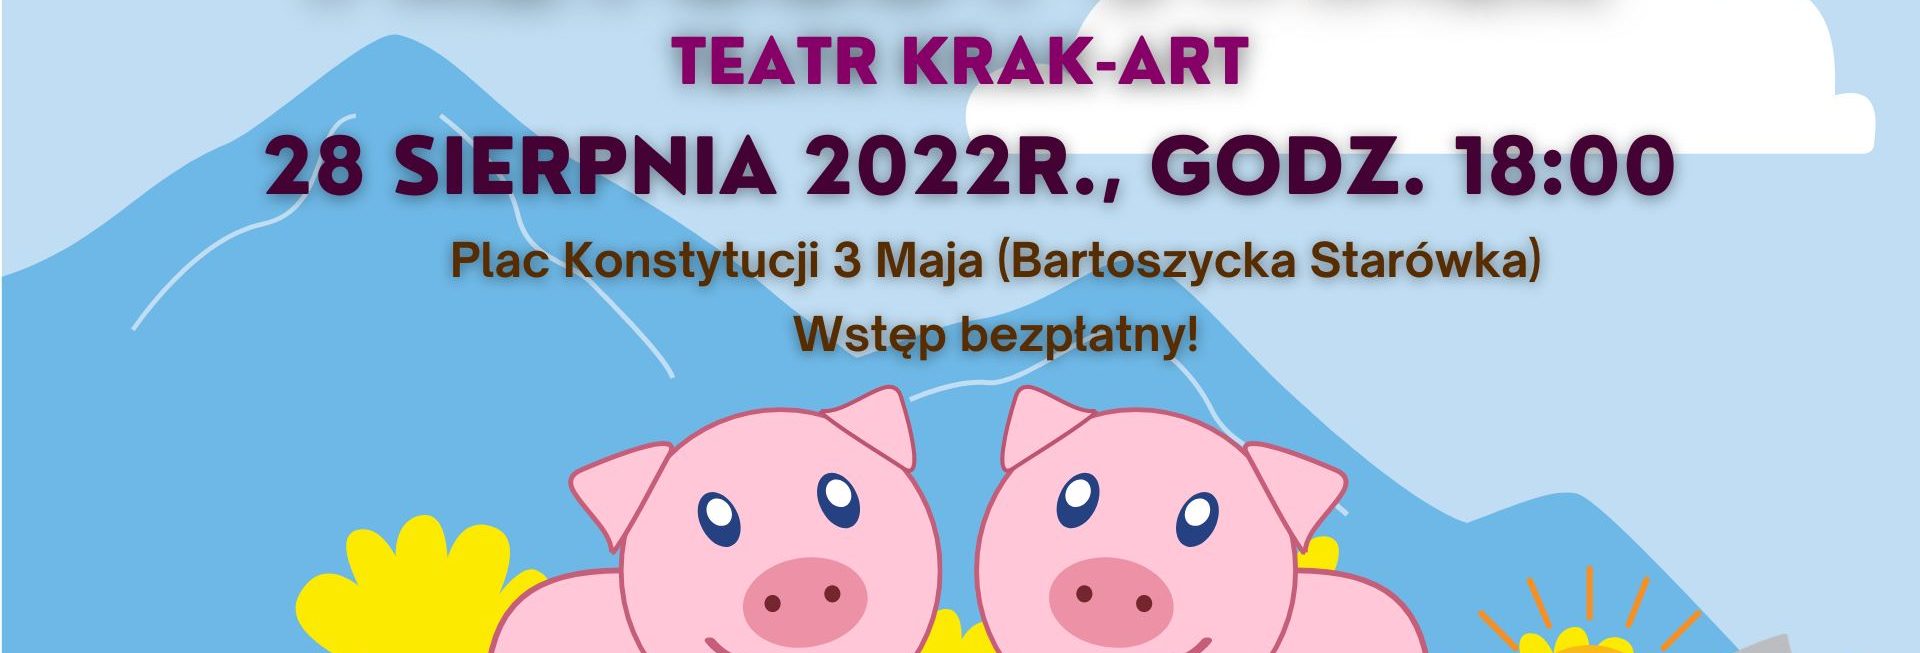 Plakat zapraszający do Bartoszyc na spektakl teatralny dla dzieci „Przygody świnek” Teatru Krak-Art.   